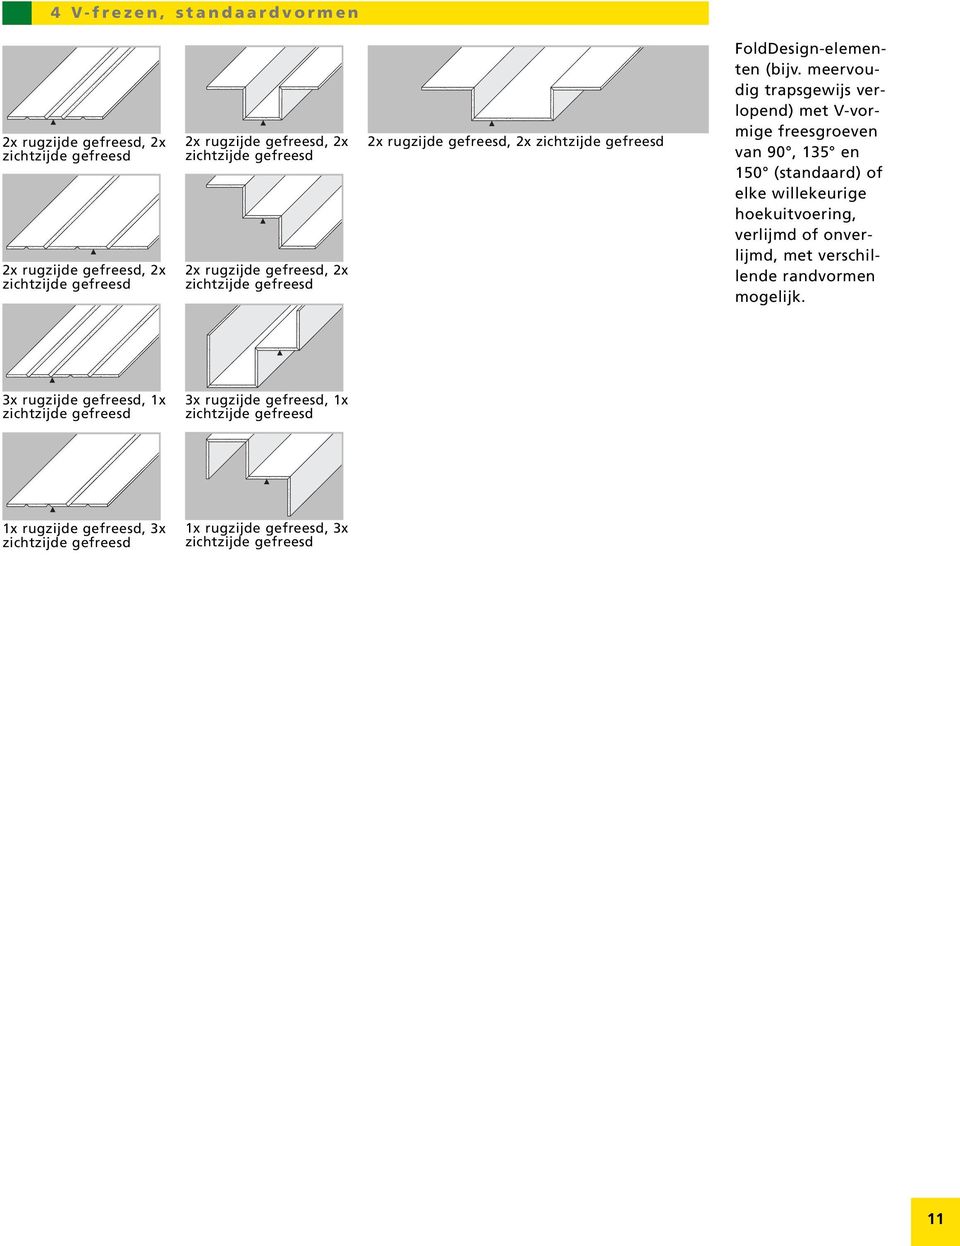 meervoudig trapsgewijs verlopend) met V-vormige freesgroeven van 90, 135 en 150 (standaard) of elke willekeurige